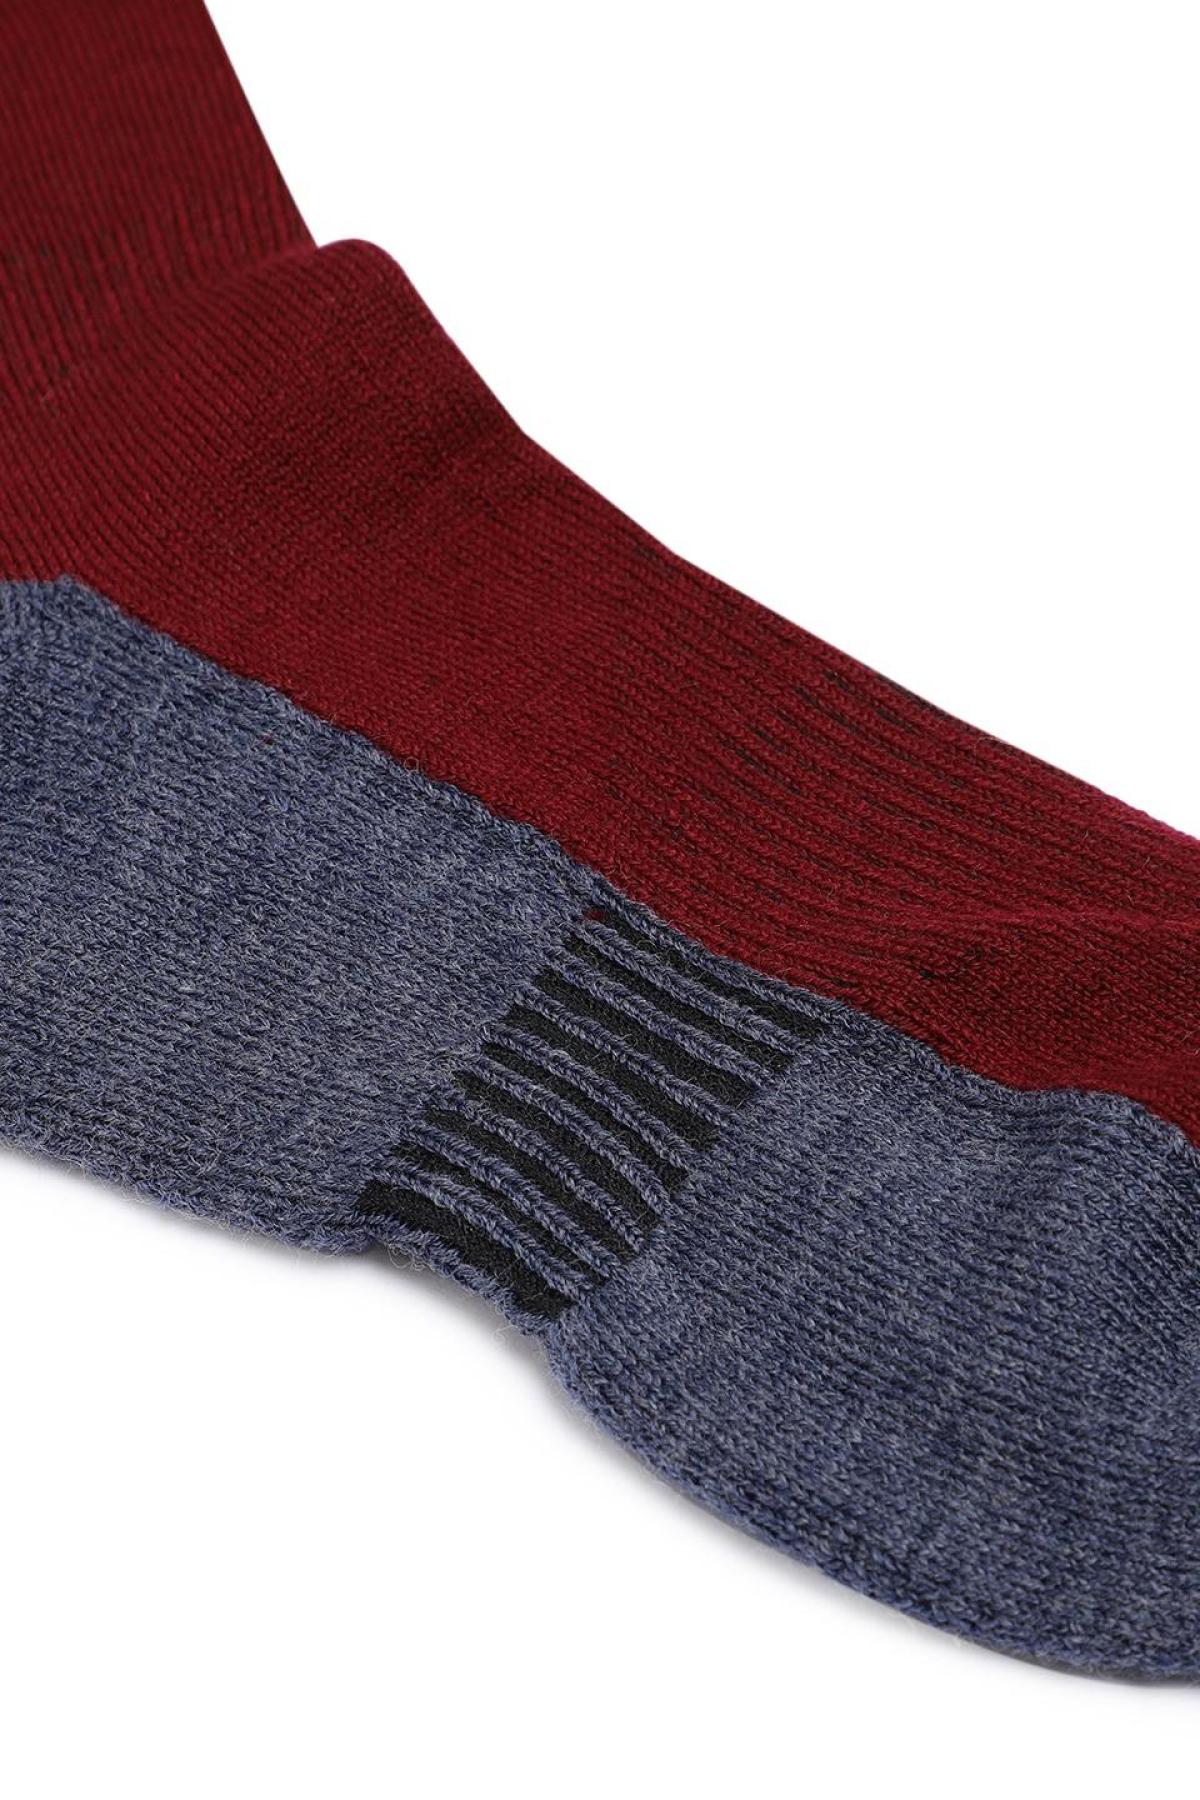 Namik No Blister Merino Wool Maroon-Grey Regular Socks | Men